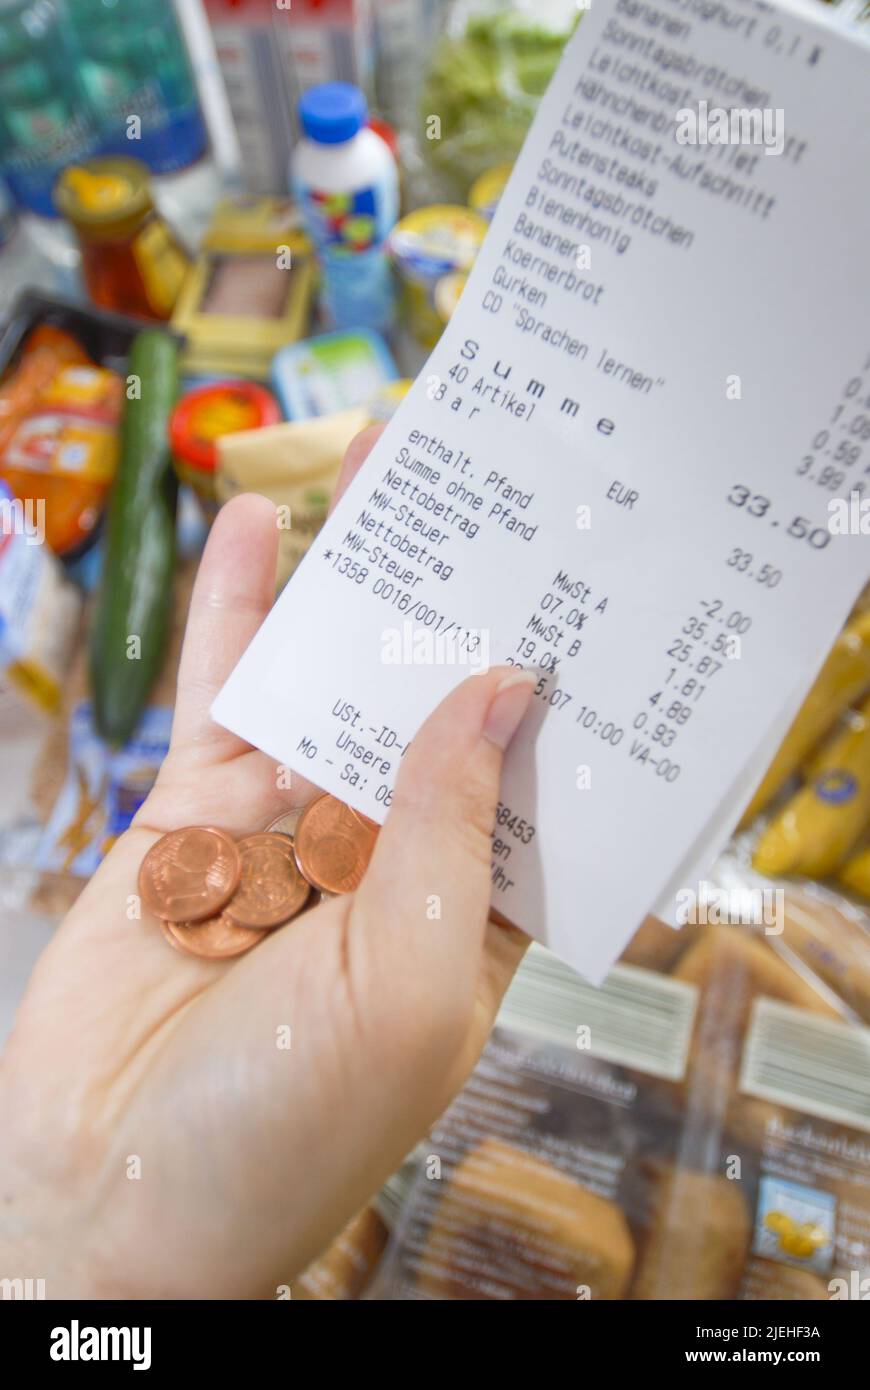 Einkaufen wird immer teuer, Preissteigerung bei Lebensmittel, Frau kontrolliert Geld in der Geldbörse und vergleicht den Kassenbon, Stock Photo